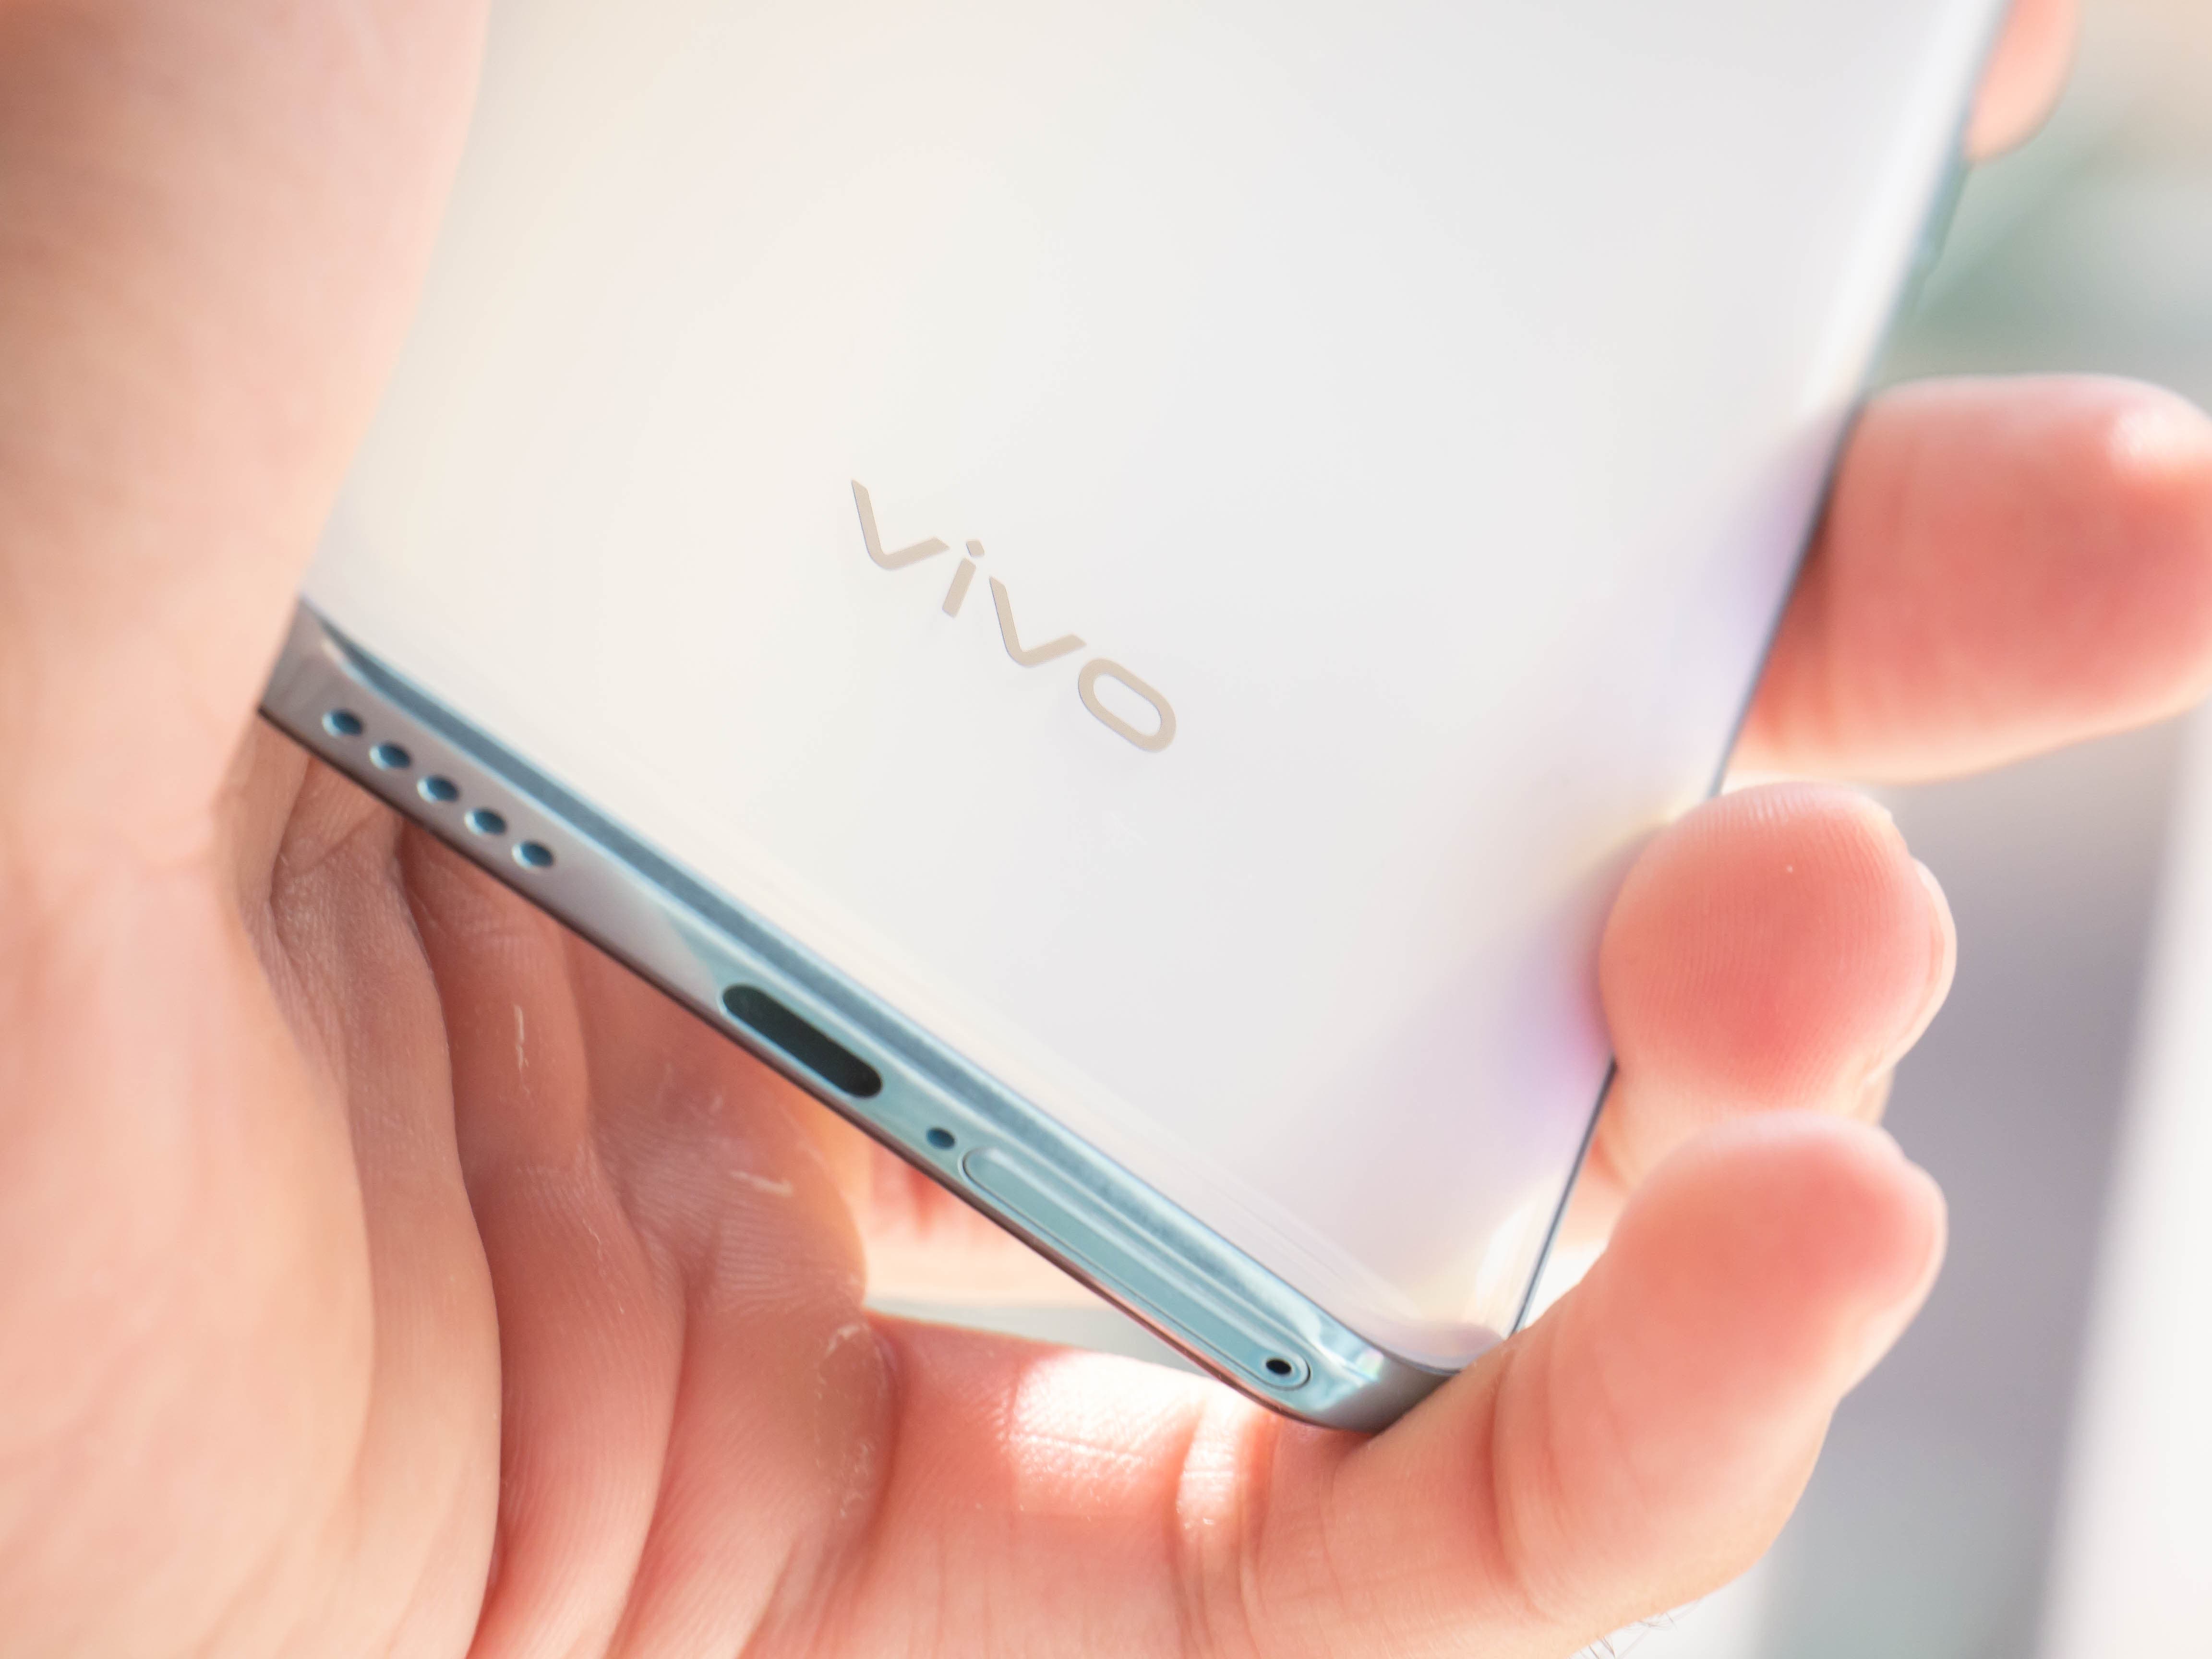 Vivo V17 Pro Review: Premium Mid-Range Camera Phone